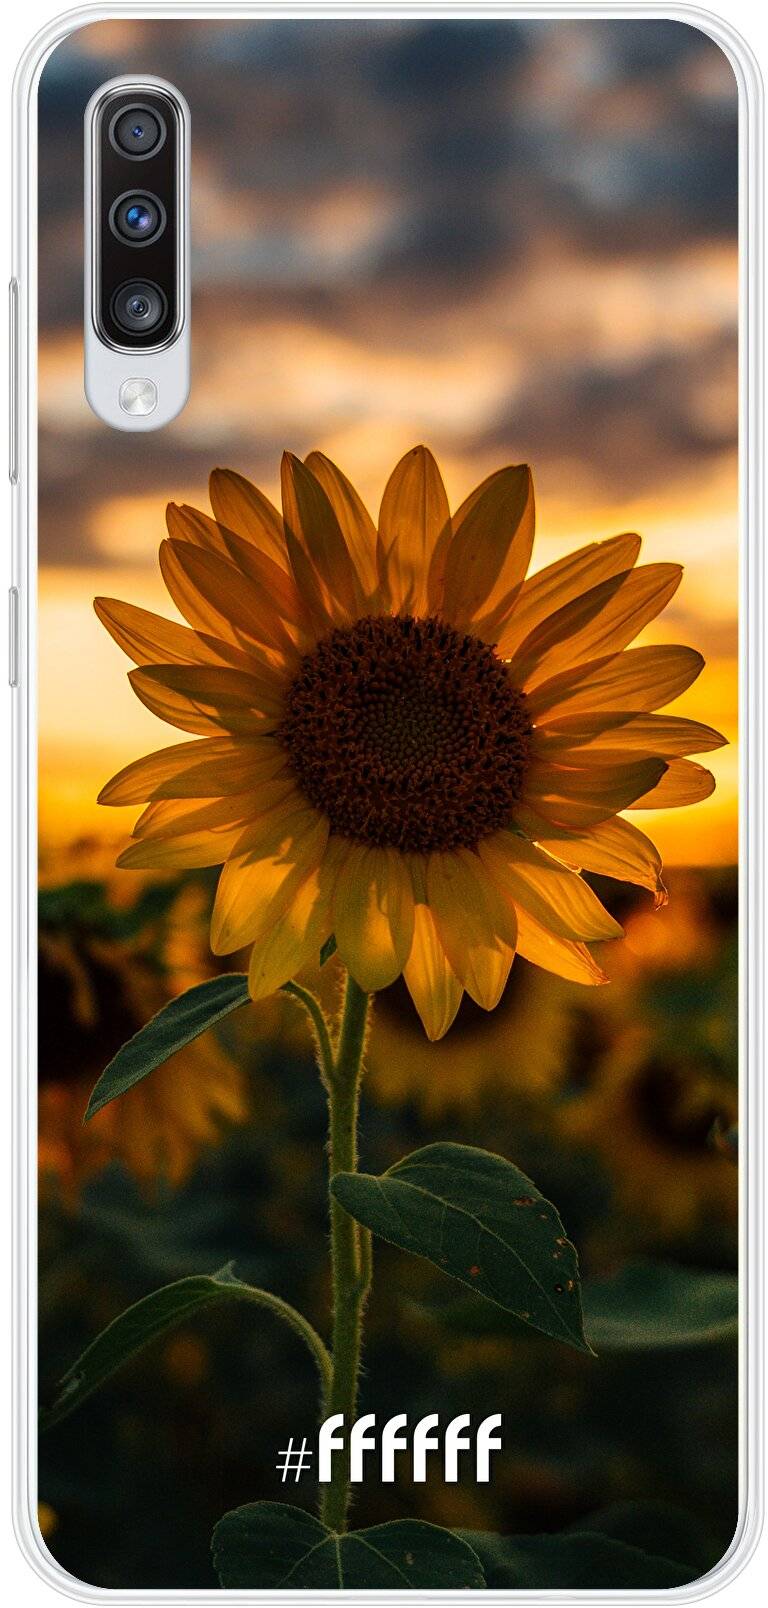 Sunset Sunflower Galaxy A70